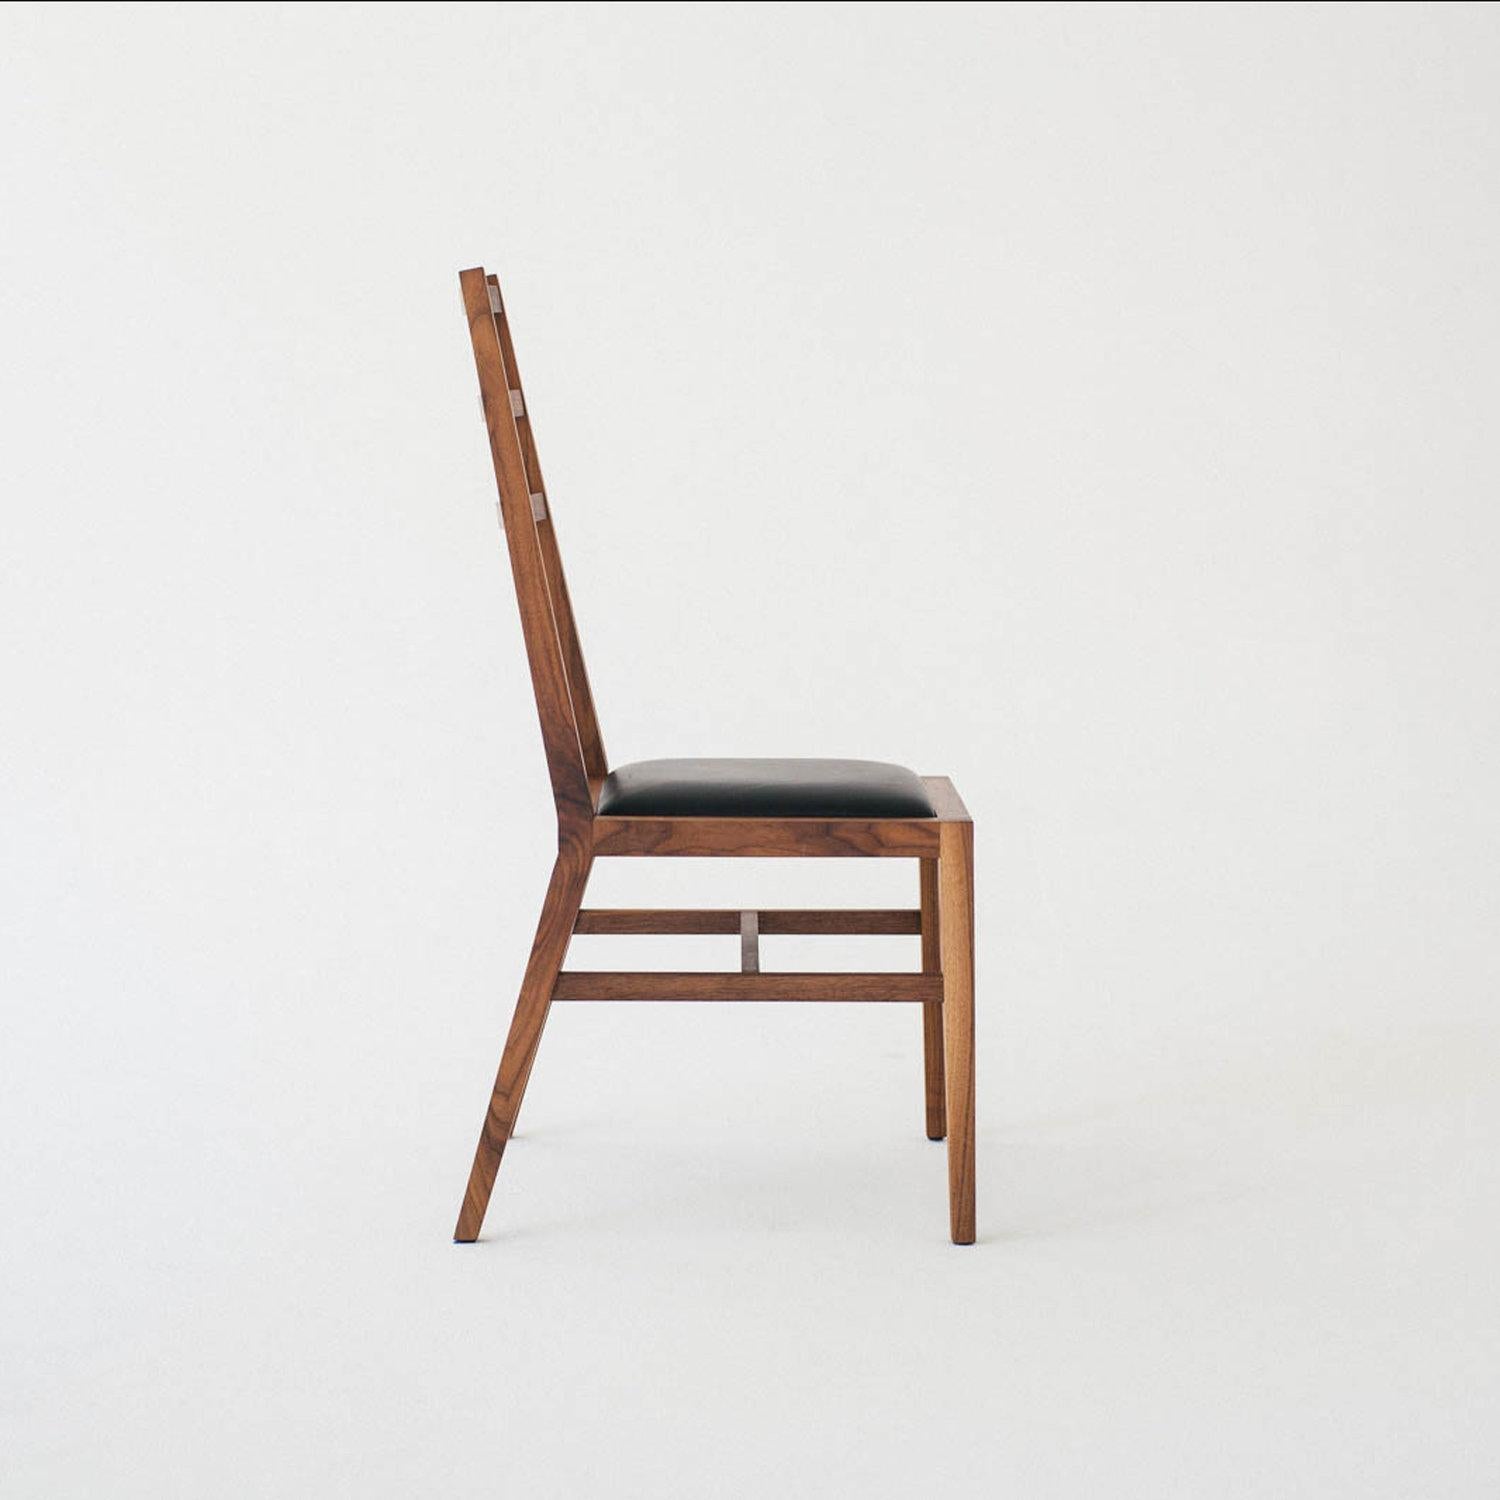 La chaise Bas est un design minimaliste et une version contemporaine de la chaise Shaker à dossier en échelle. Elle est dotée d'un siège rembourré et d'un angle plus moderne avec une assise légèrement plus indulgente, tout en conservant l'élégance